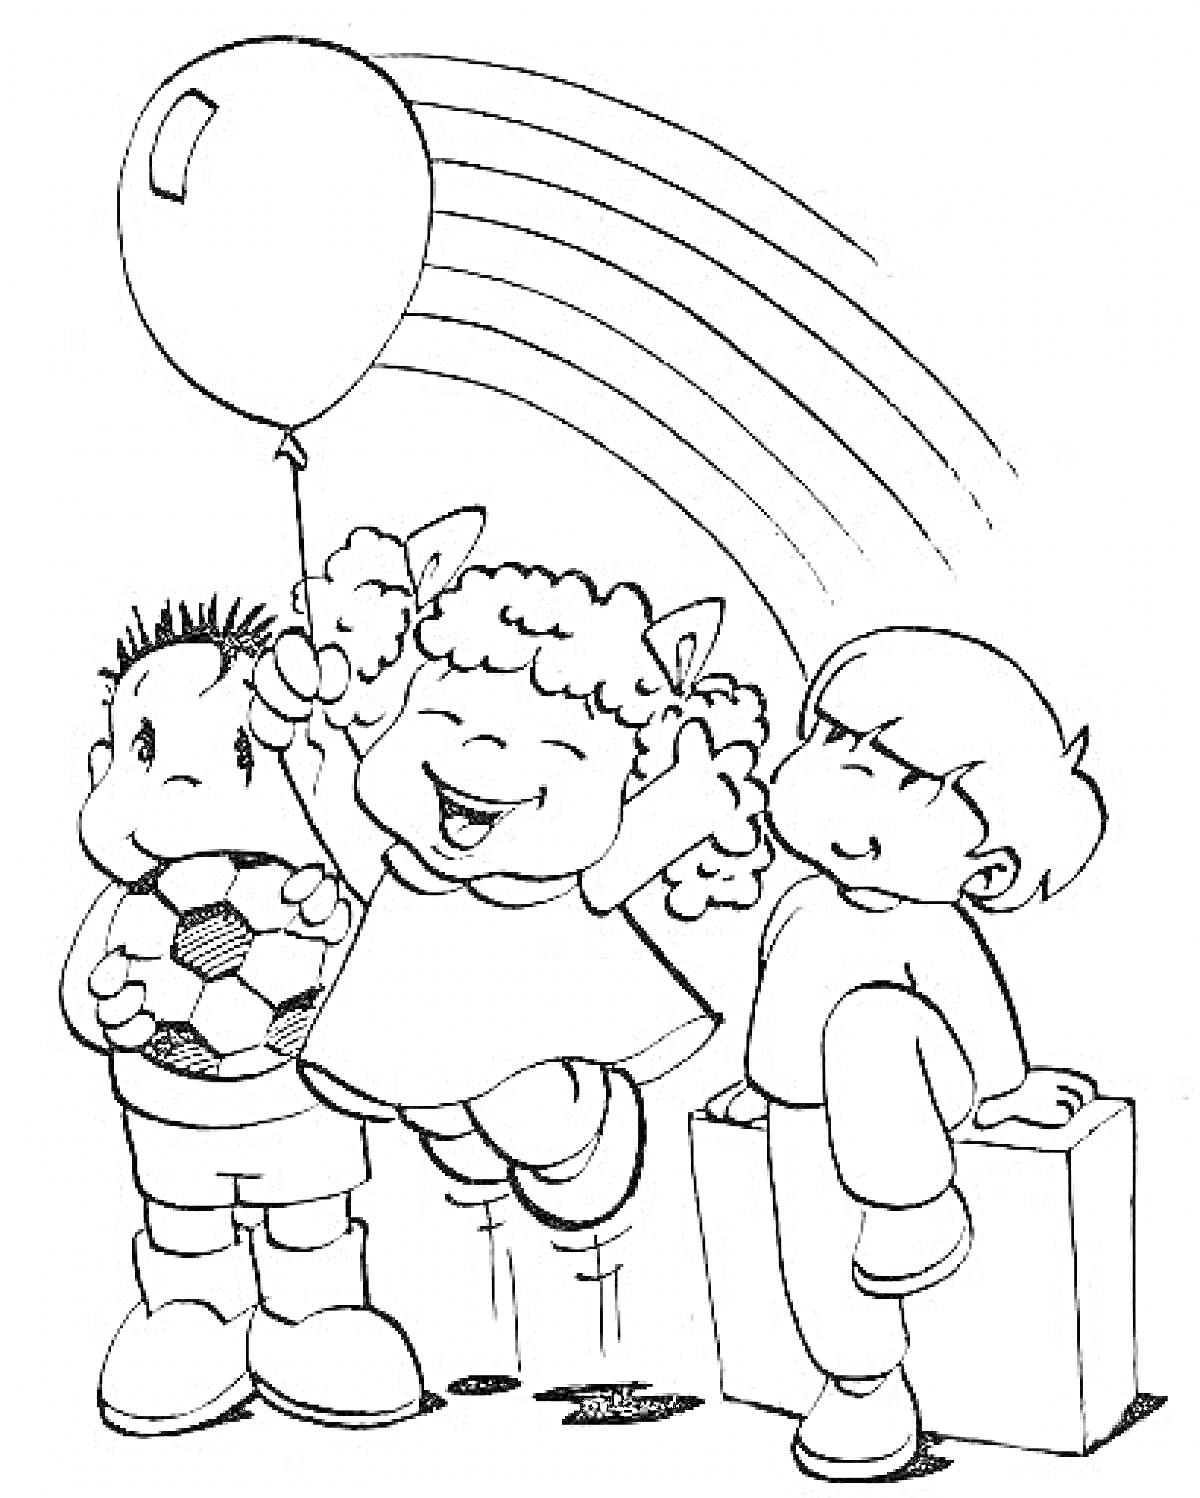 Дети с мячом, воздушным шаром и радугой